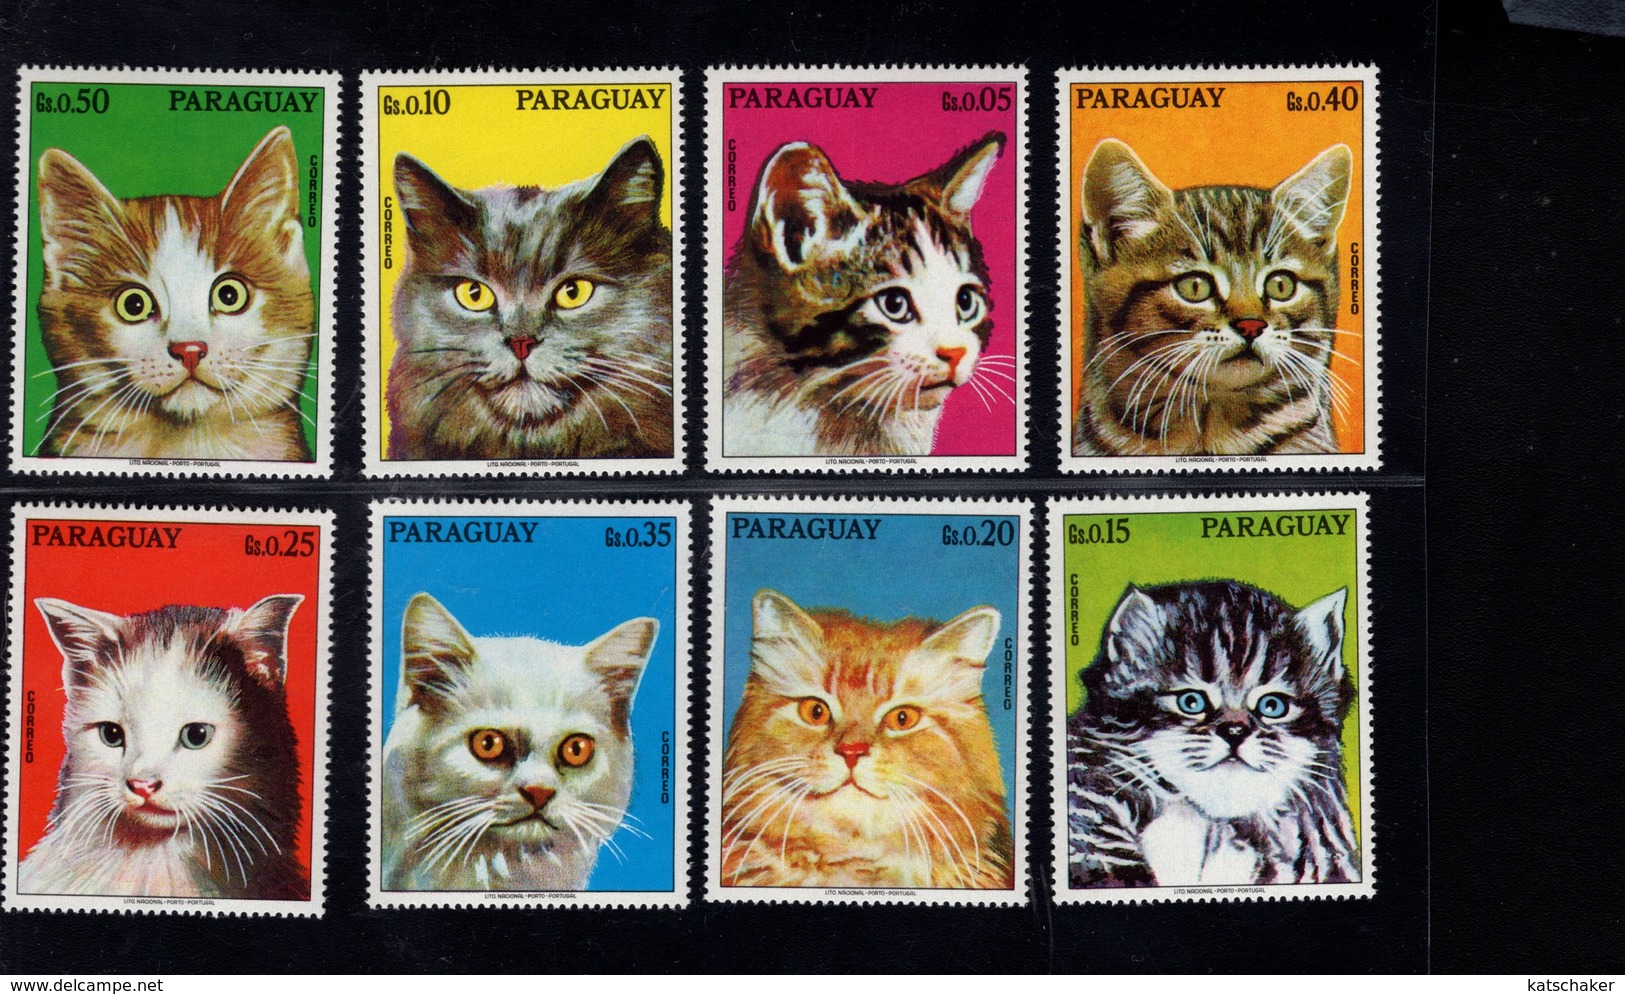 693234442 PARAGUAY 1976 POSTFRIS MINT NEVER HINGED POSTFRISCH EINWANDFREI SCOTT 1635A 1635H VARIOUS CATS - Paraguay